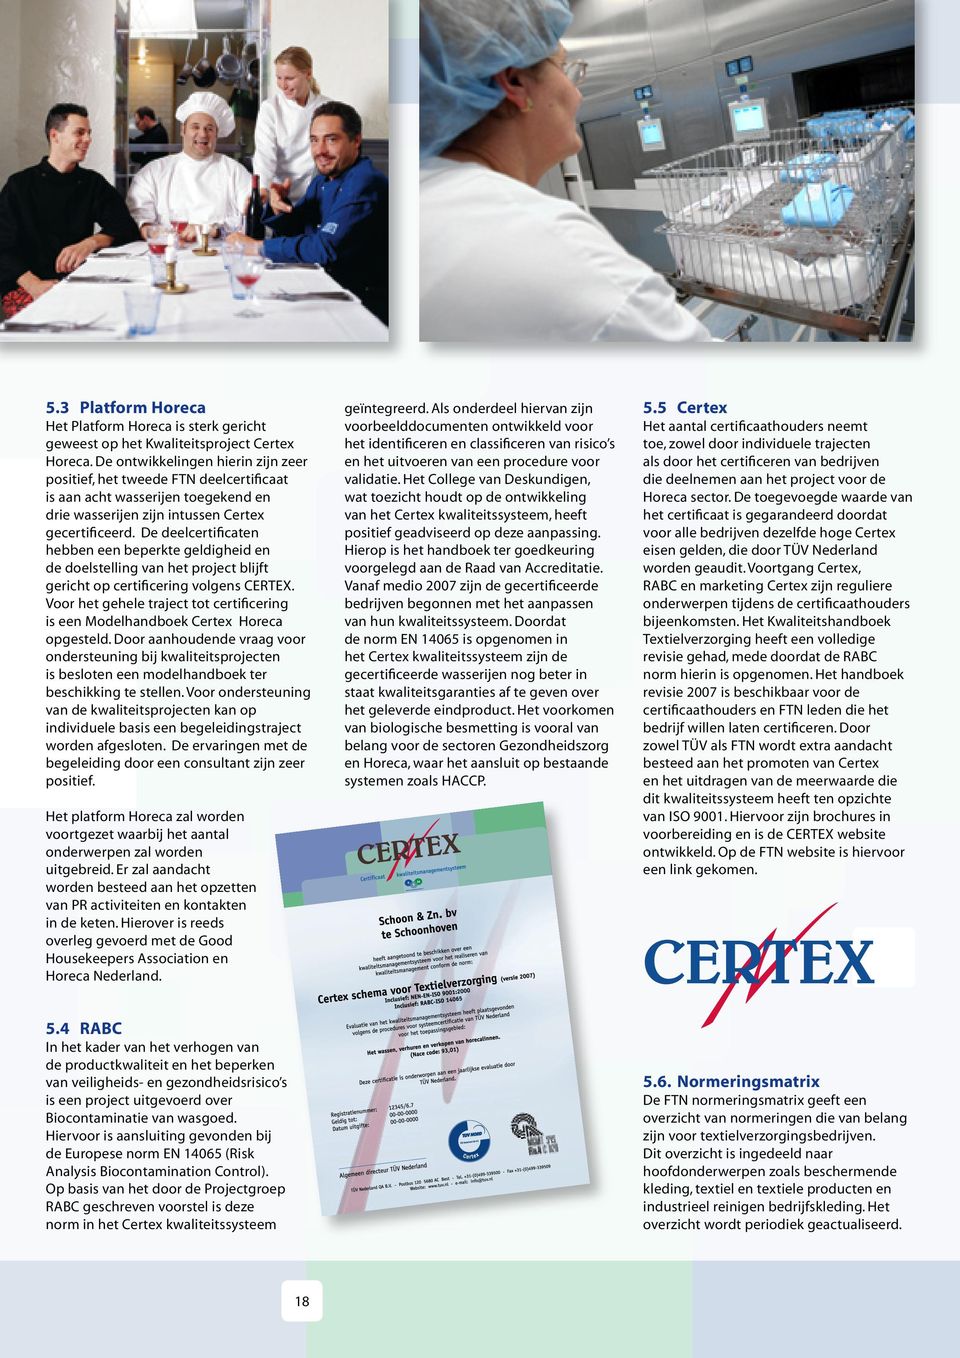 De deelcertificaten hebben een beperkte geldigheid en de doelstelling van het project blijft gericht op certificering volgens CERTEX.